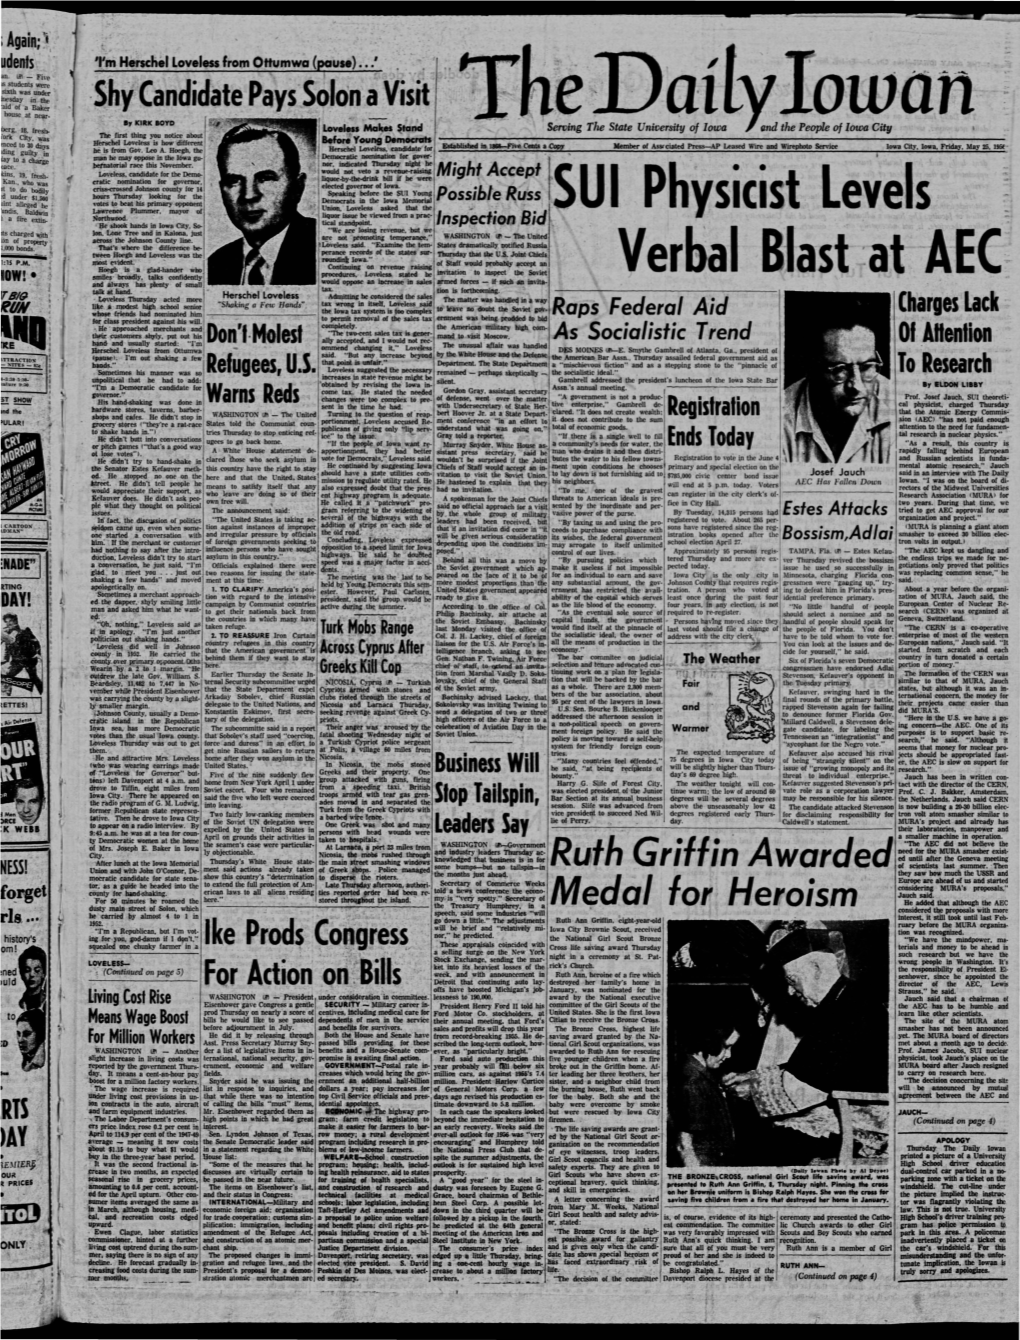 Daily Iowan (Iowa City, Iowa), 1956-05-25